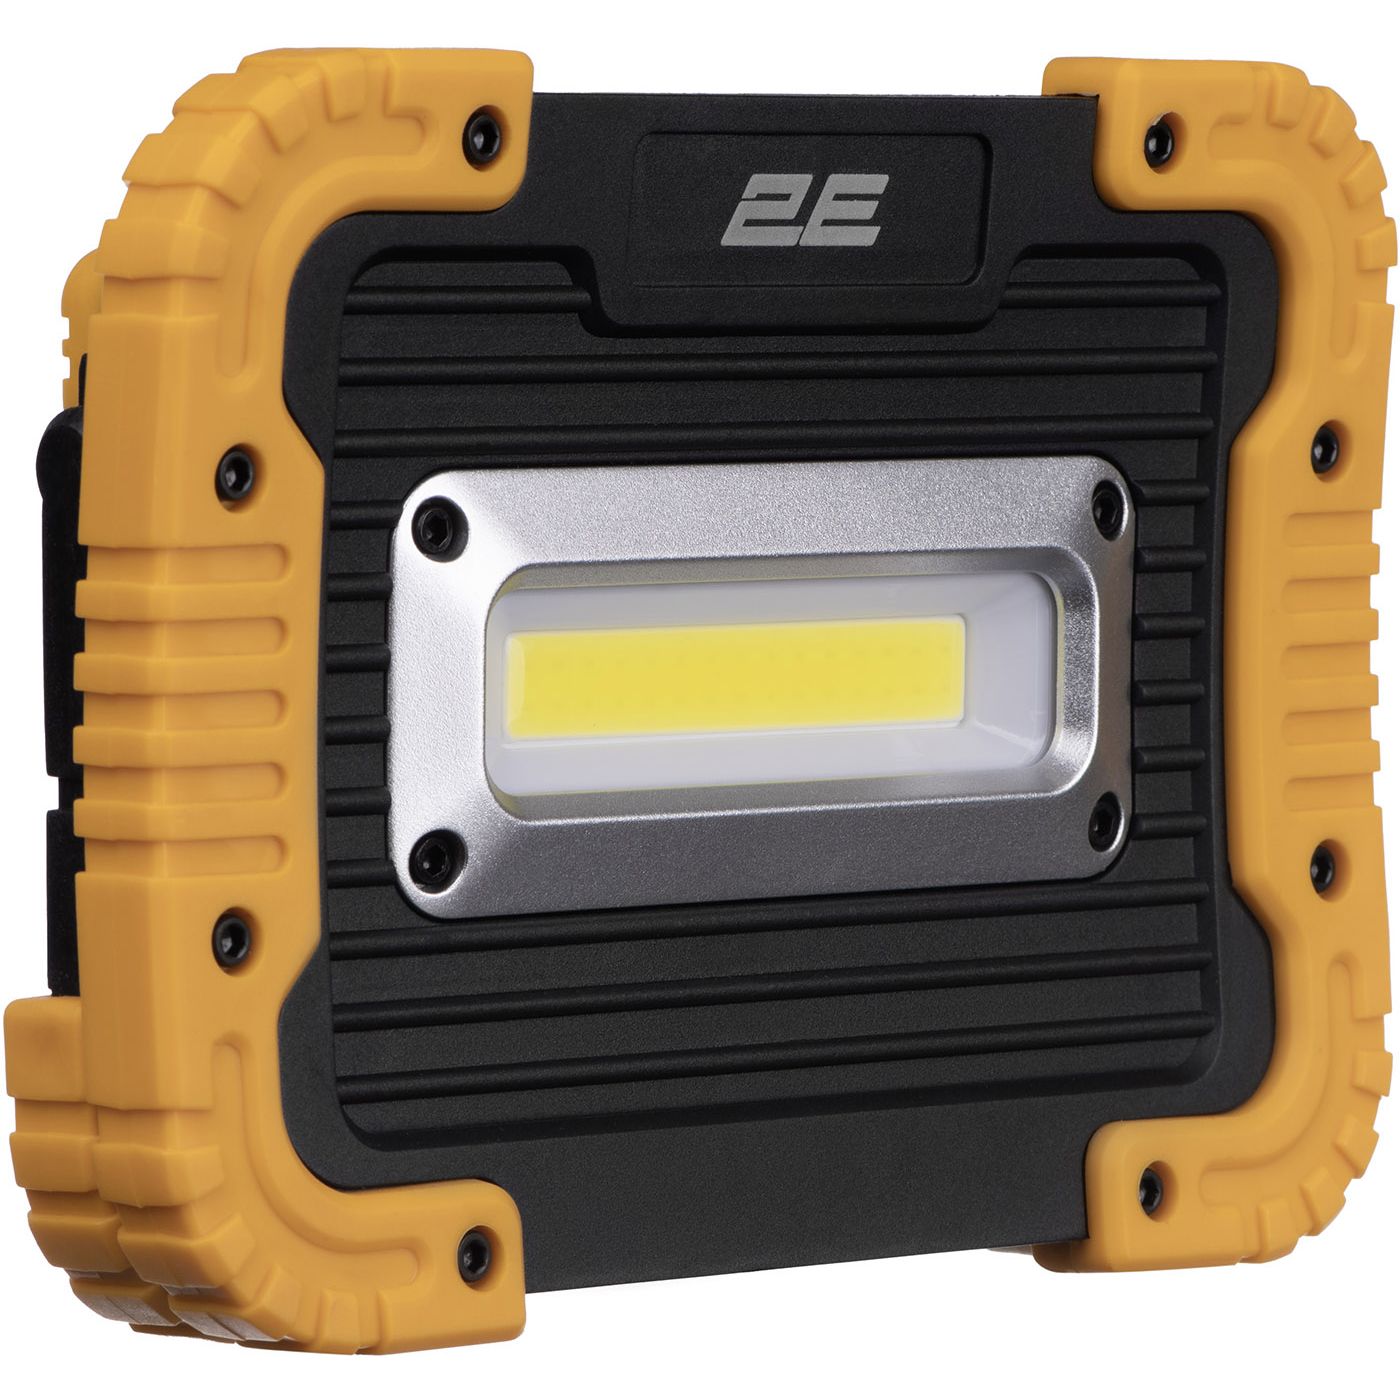 Прожектор аккумуляторный 2E Comfort Home 4400 мА/ч 3 функции освещения (2E-WLBL1844) - фото 4